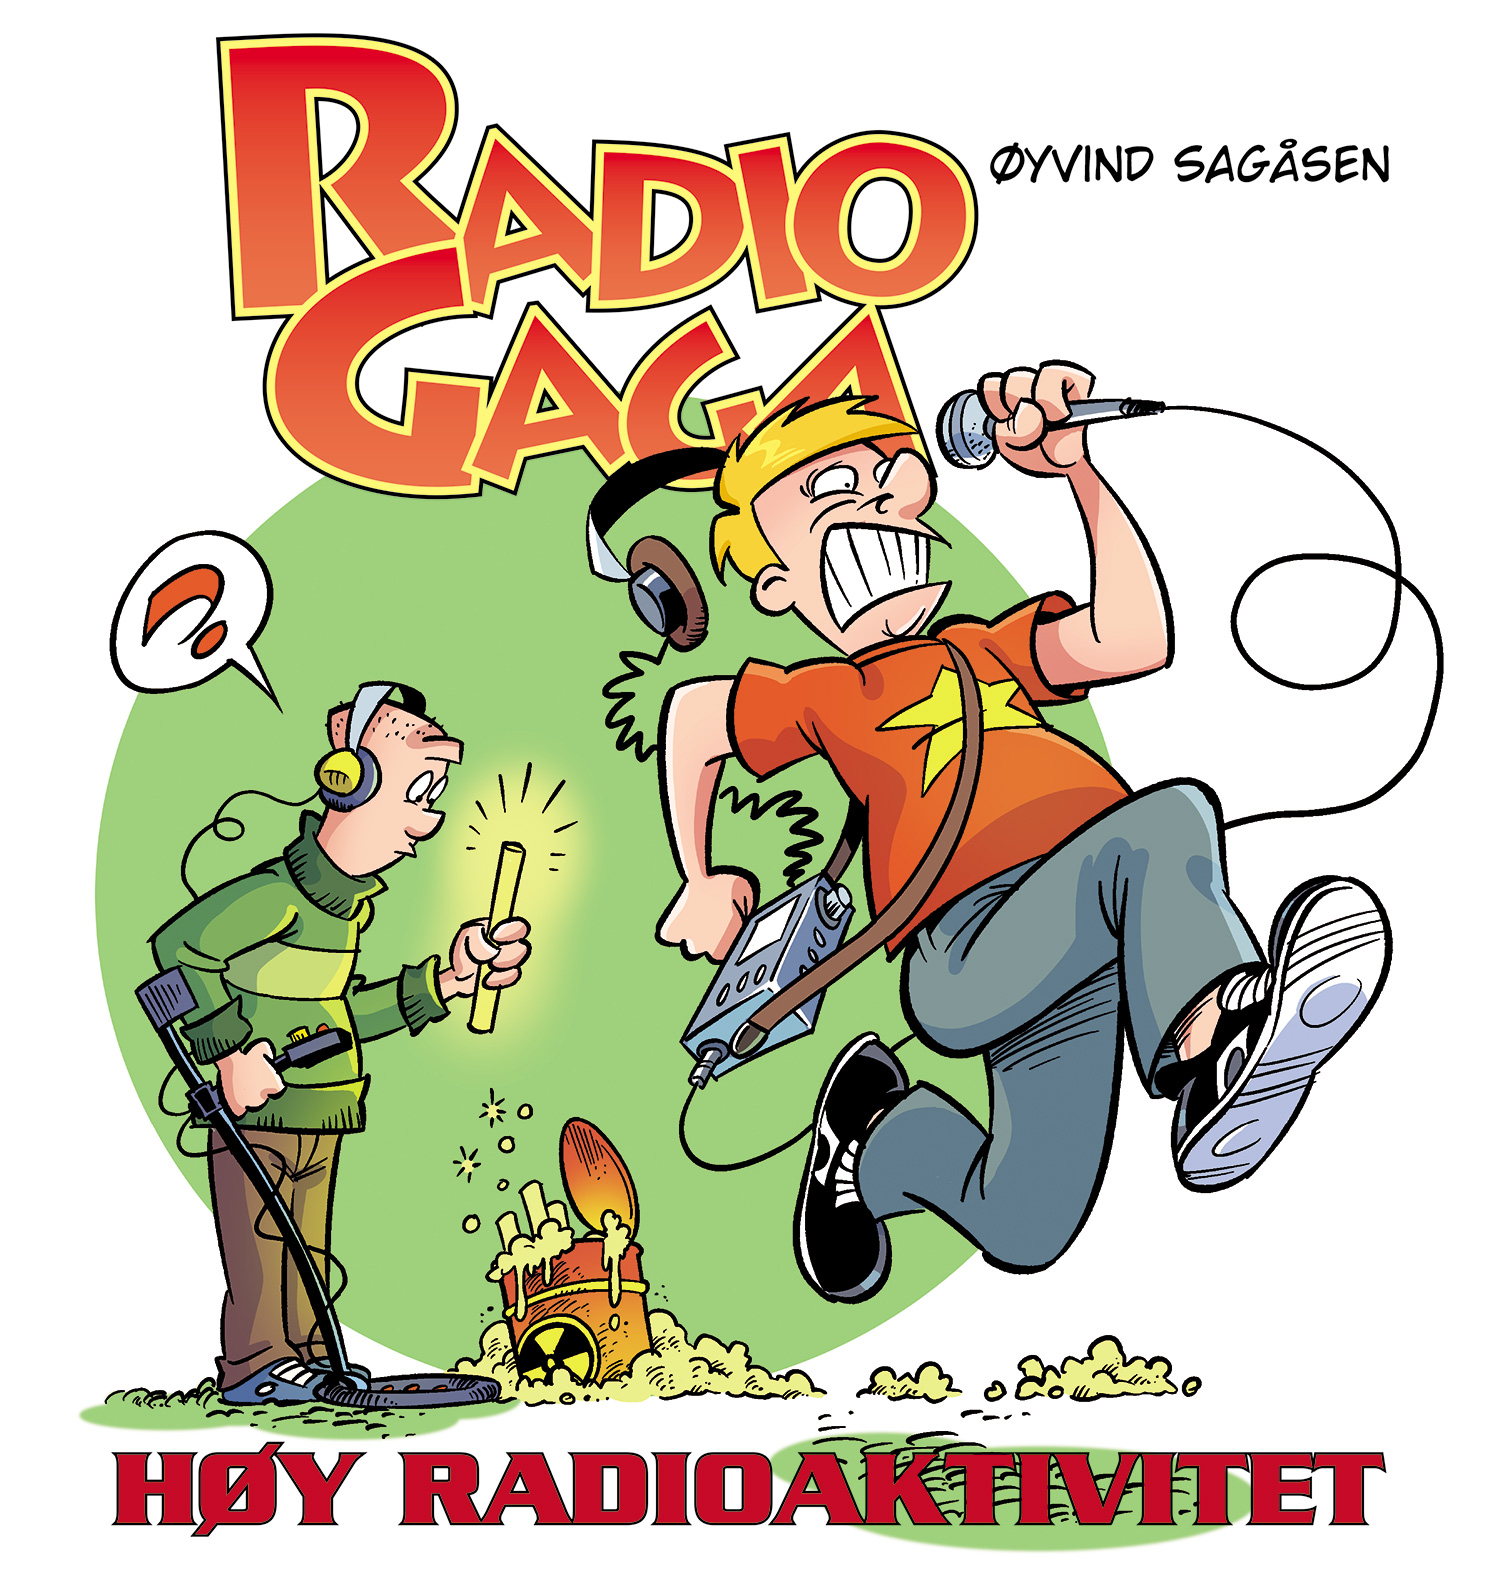 Radio Gaga bok "Høy Radioaktivitet" 2022